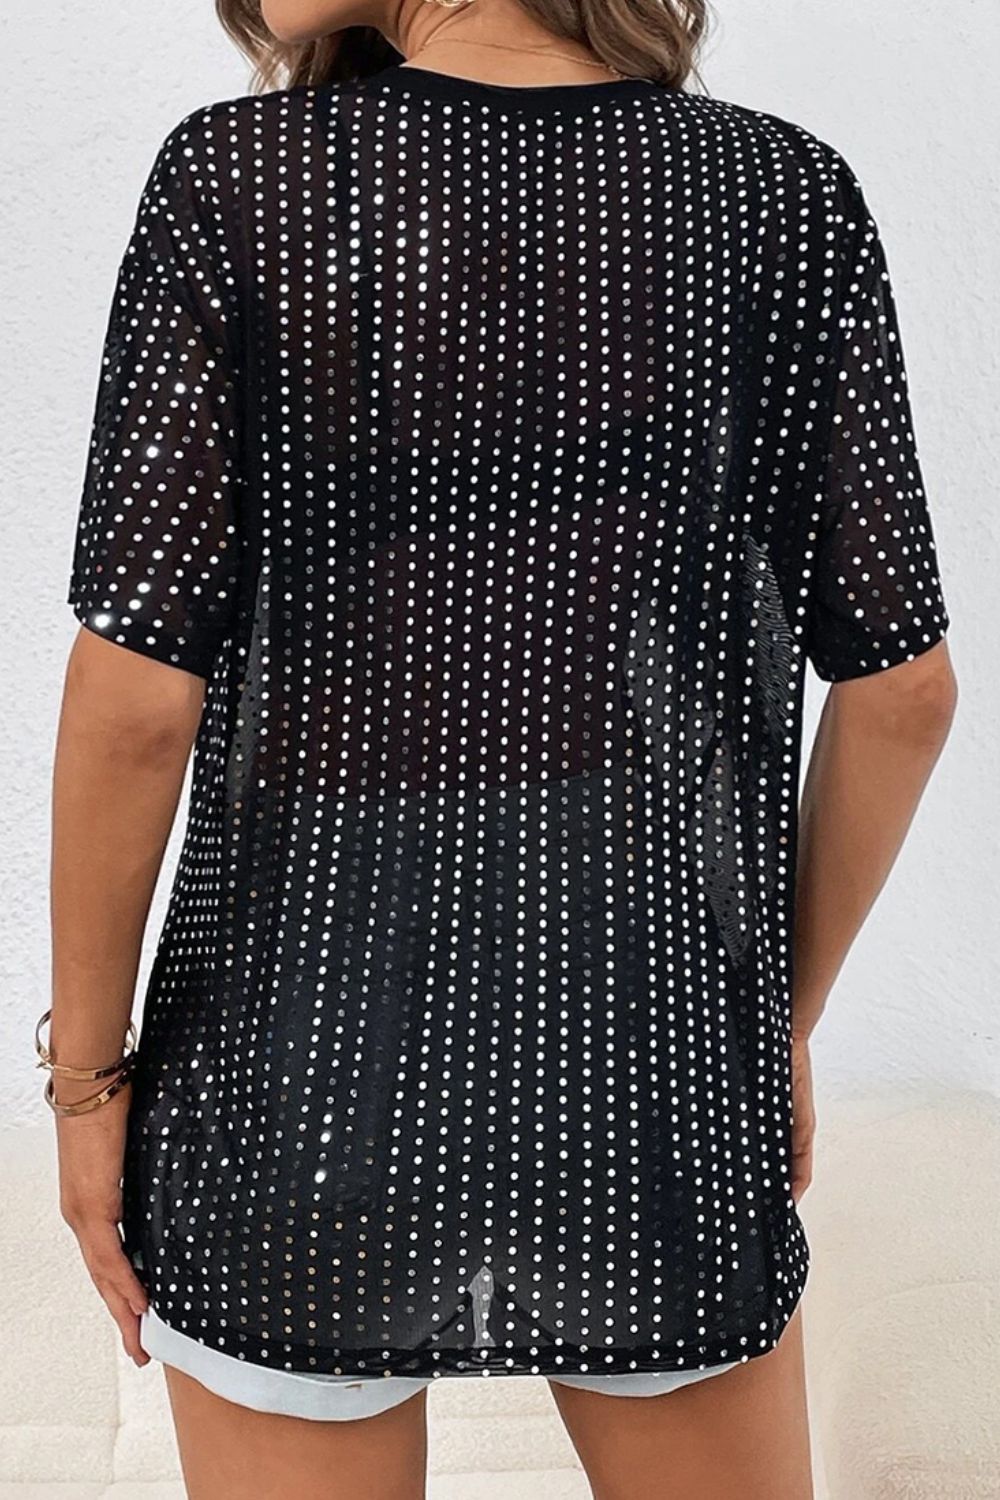 TEEK - Black Polka Dot Rhinestone Half Sleeve Shirt TOPS TEEK Trend   